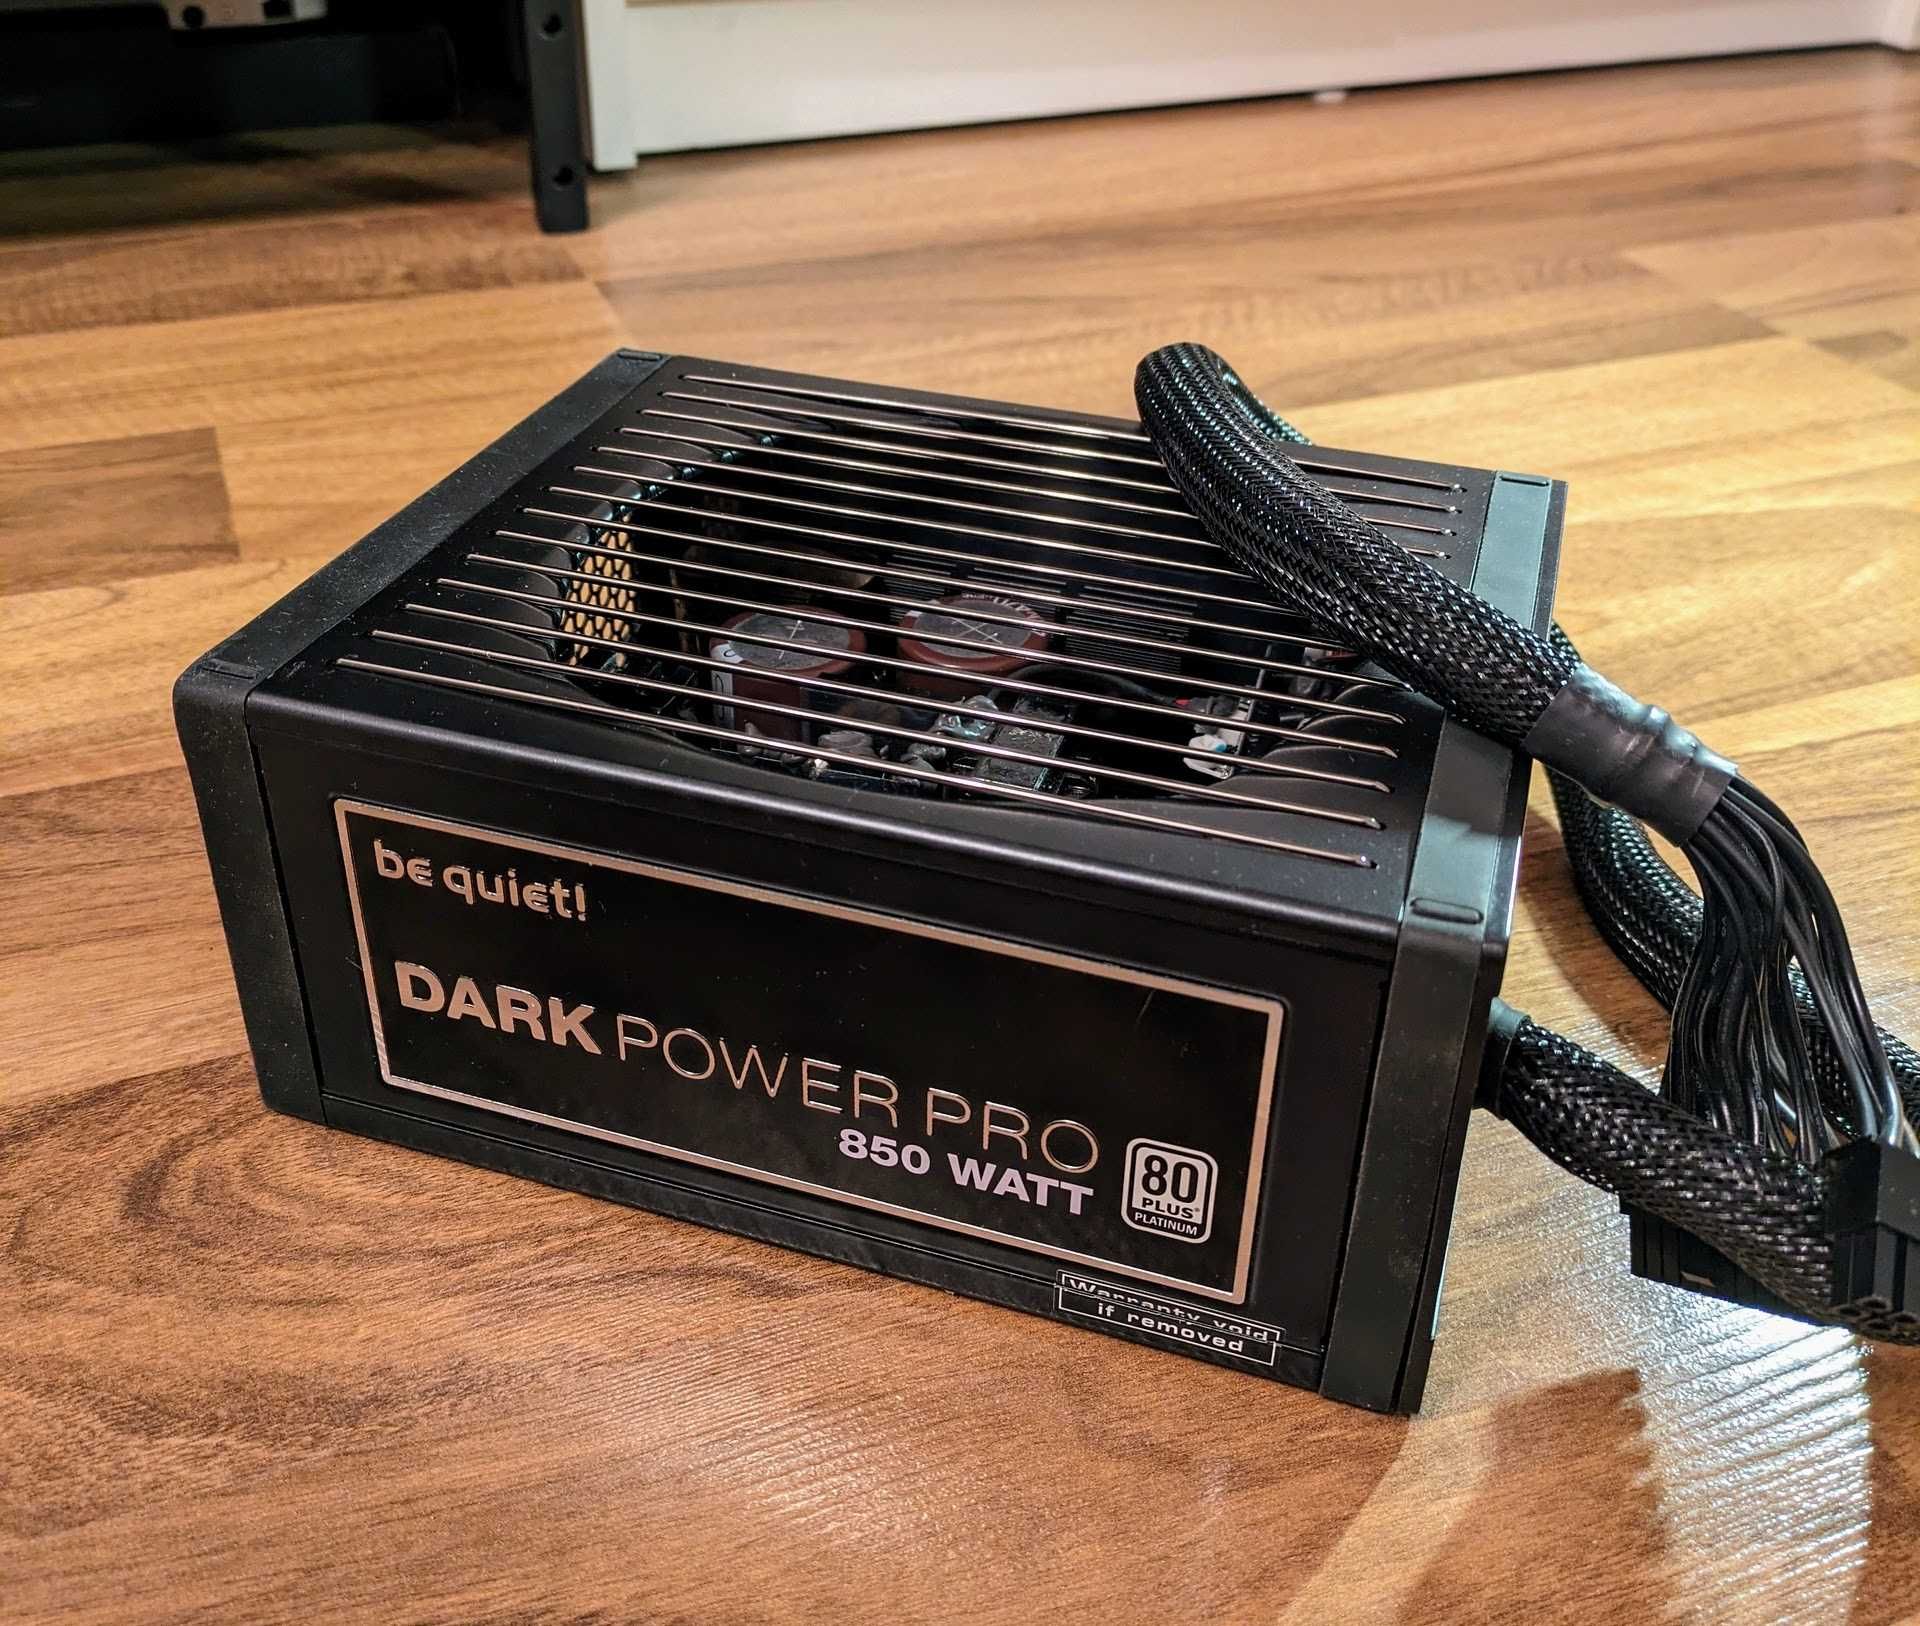 Zasilacz bequiet! Dark Power Pro 11 850 W uszkodzony na części naprawa